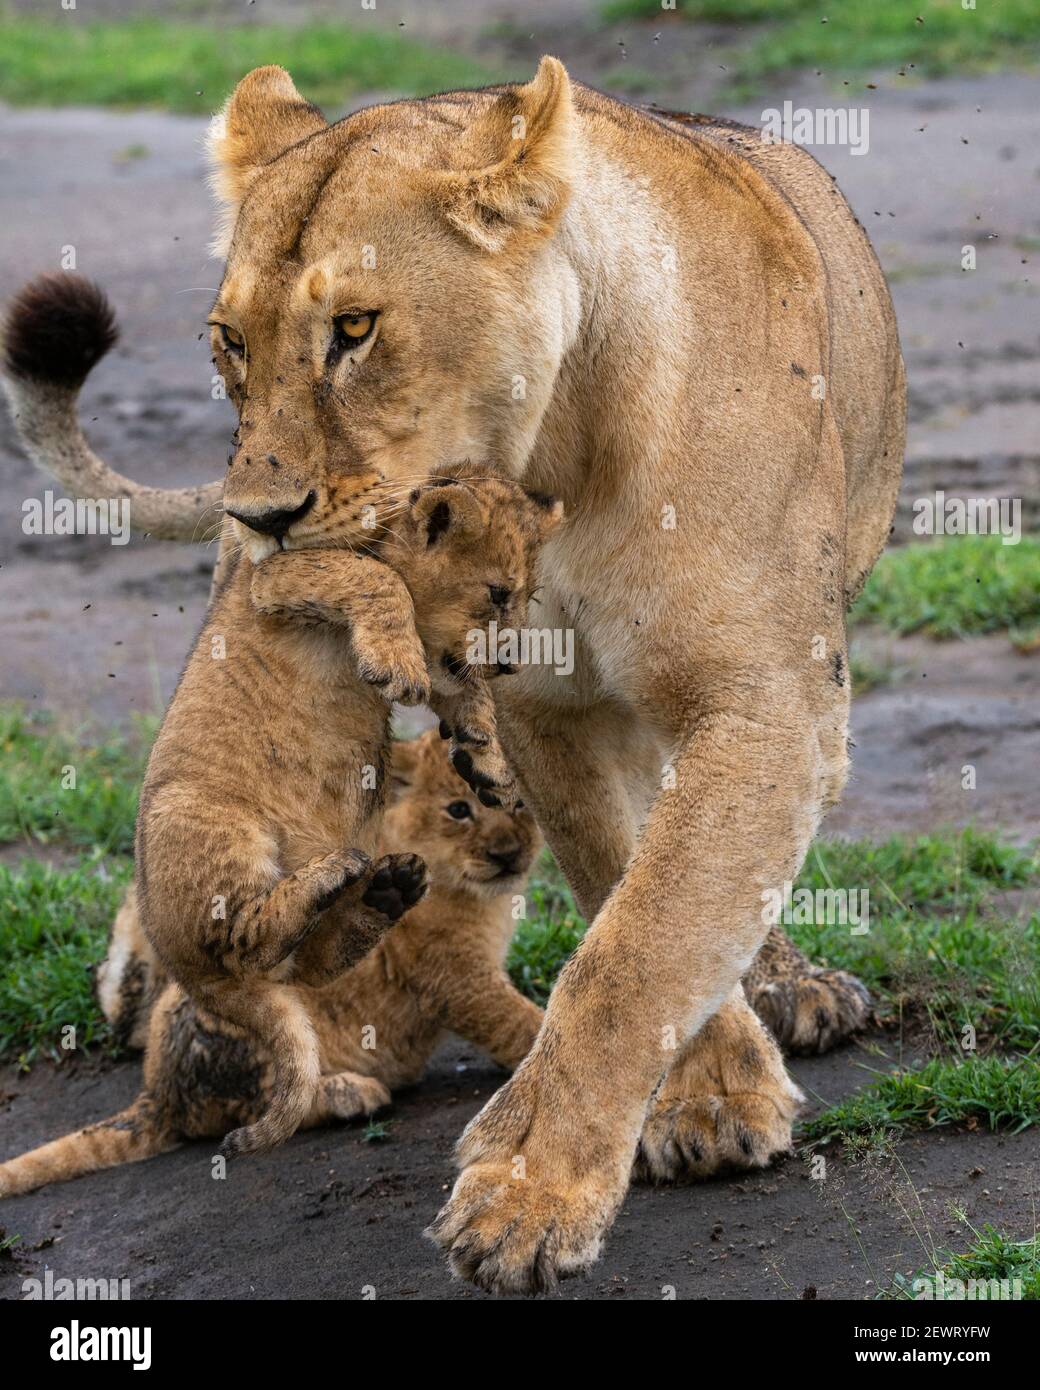 Une lionne (Panthera leo) avec ses petits de quatre semaines, Ndutu, zone de conservation de Ngorongoro, Serengeti, Tanzanie, Afrique de l'est, Afrique Banque D'Images